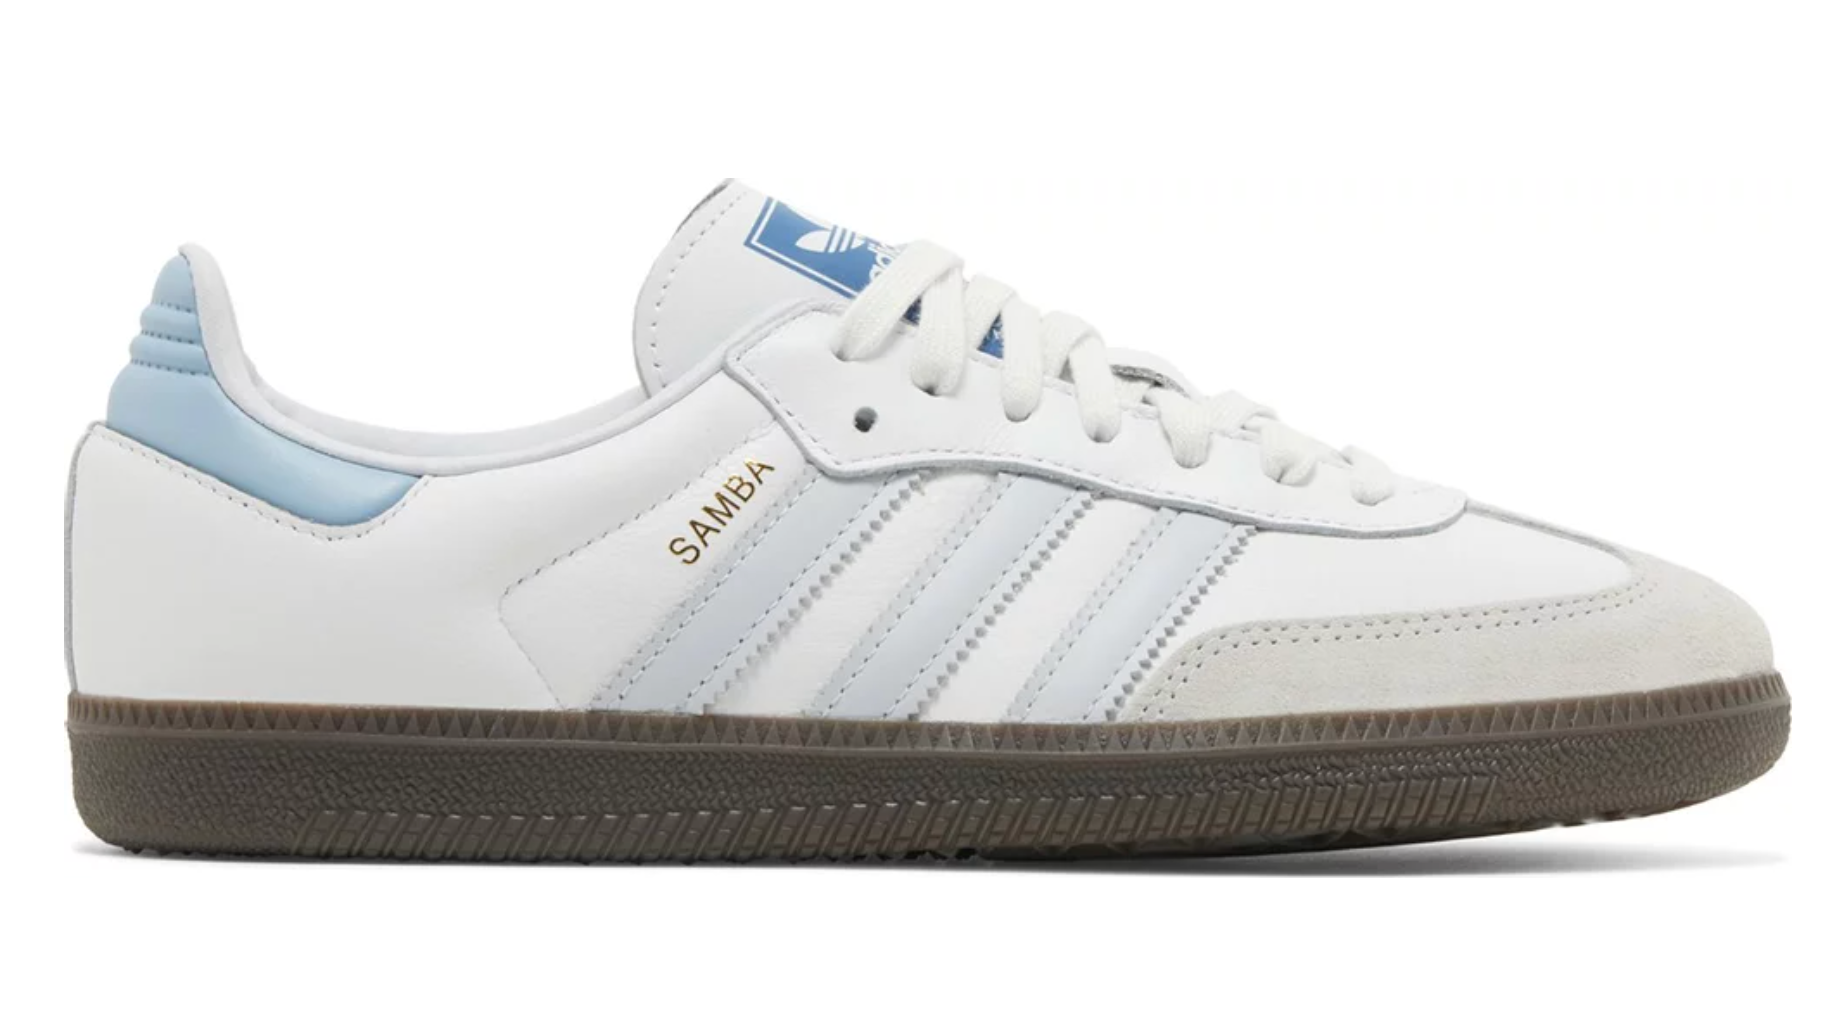 Adidas Samba Og White Halo Blue - Size: UK 13.5 - EU 49 1/3 - Size: UK 13.5 - EU 49 1/3 -